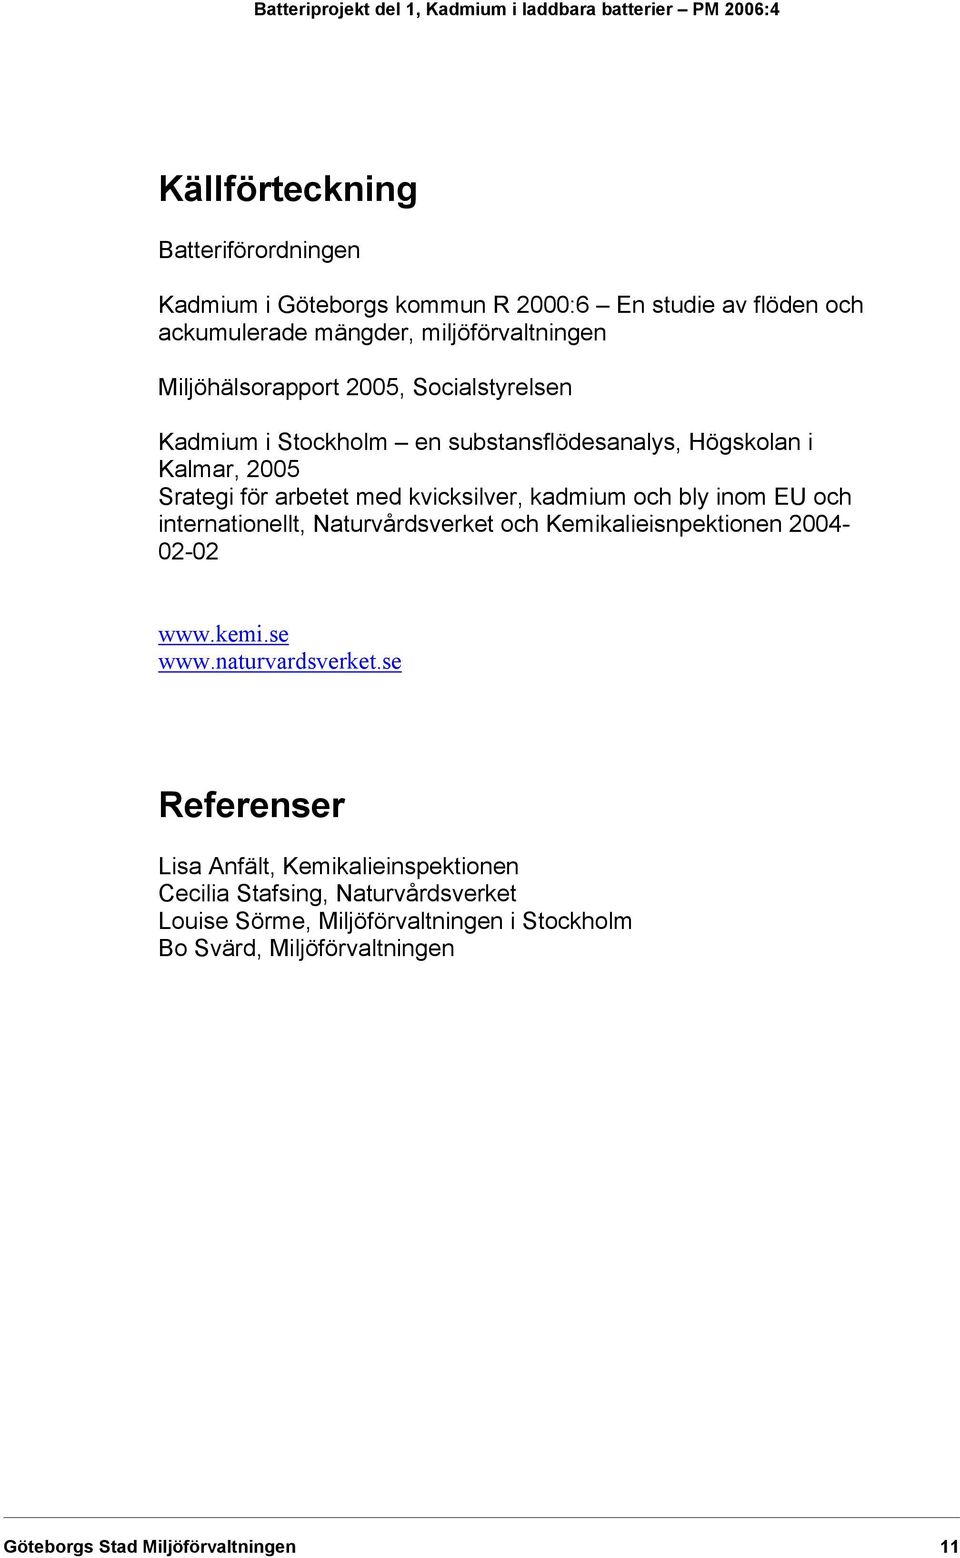 arbetet med kvicksilver, kadmium och bly inom EU och internationellt, Naturvårdsverket och Kemikalieisnpektionen 2004-02-02 www.kemi.se www.naturvardsverket.